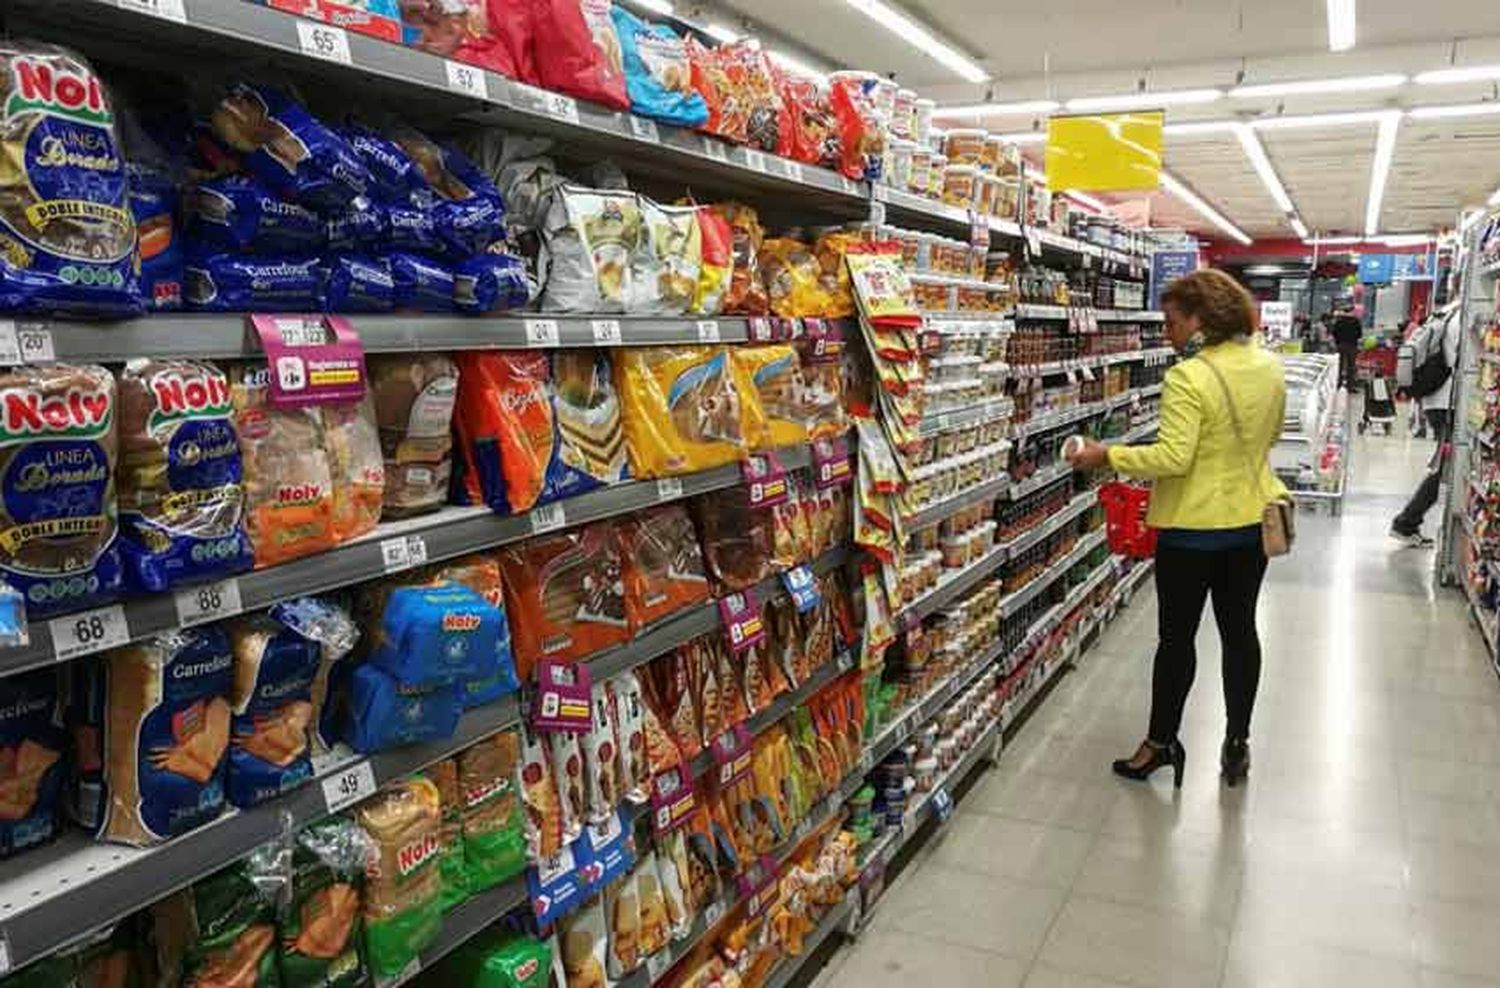 Las ventas en supermercados bajaron un 2,6% en mayo